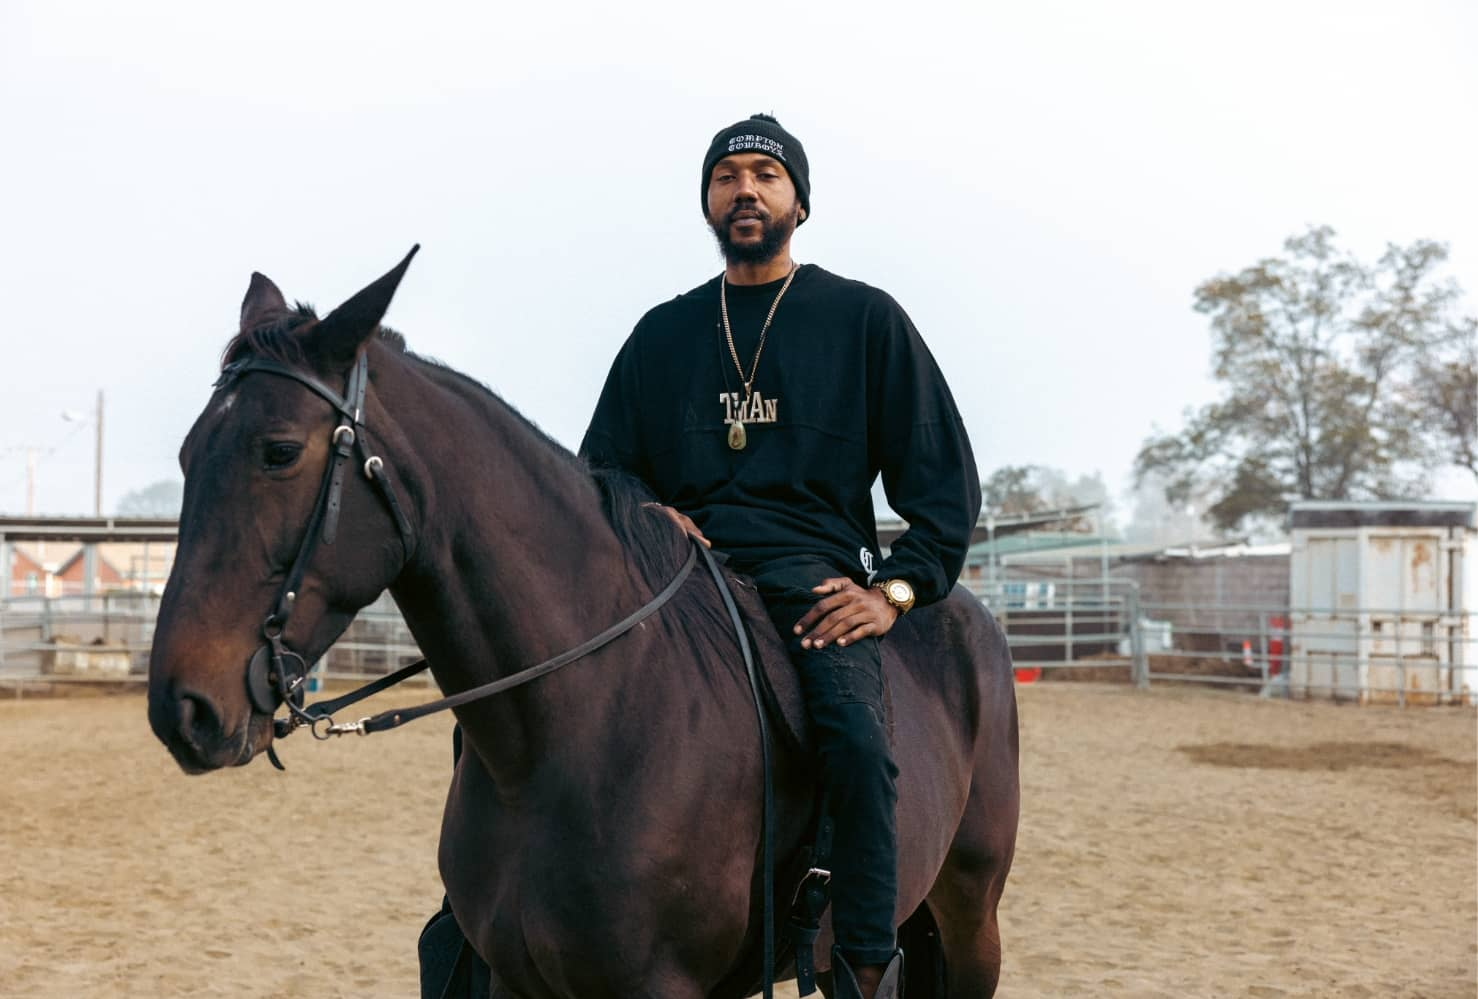 Compton Cowboys man riding brown horse